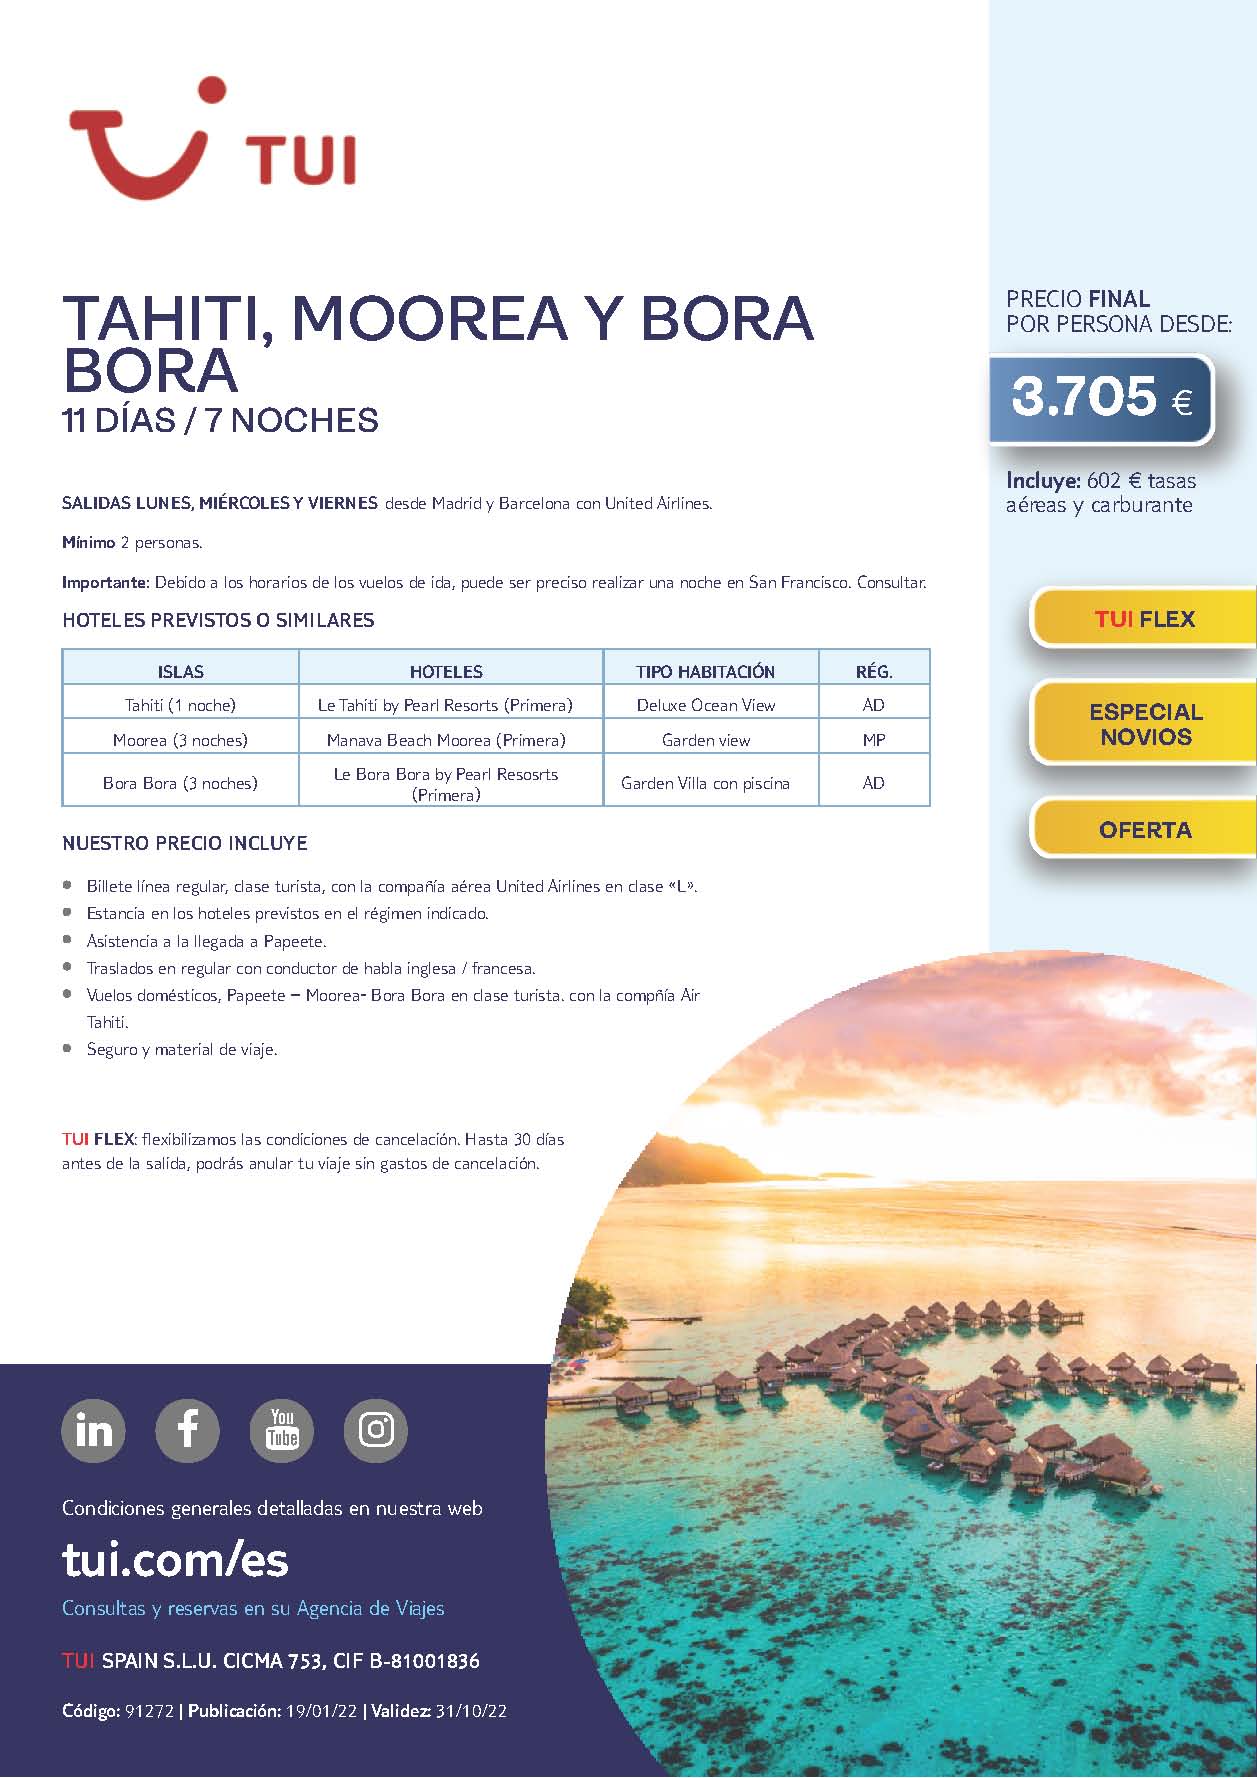 Oferta TUI Tahiti Moorea y Bora Bora 11 dias 2022 salidas desde Madrid y Barcelona vuelos United Airlines